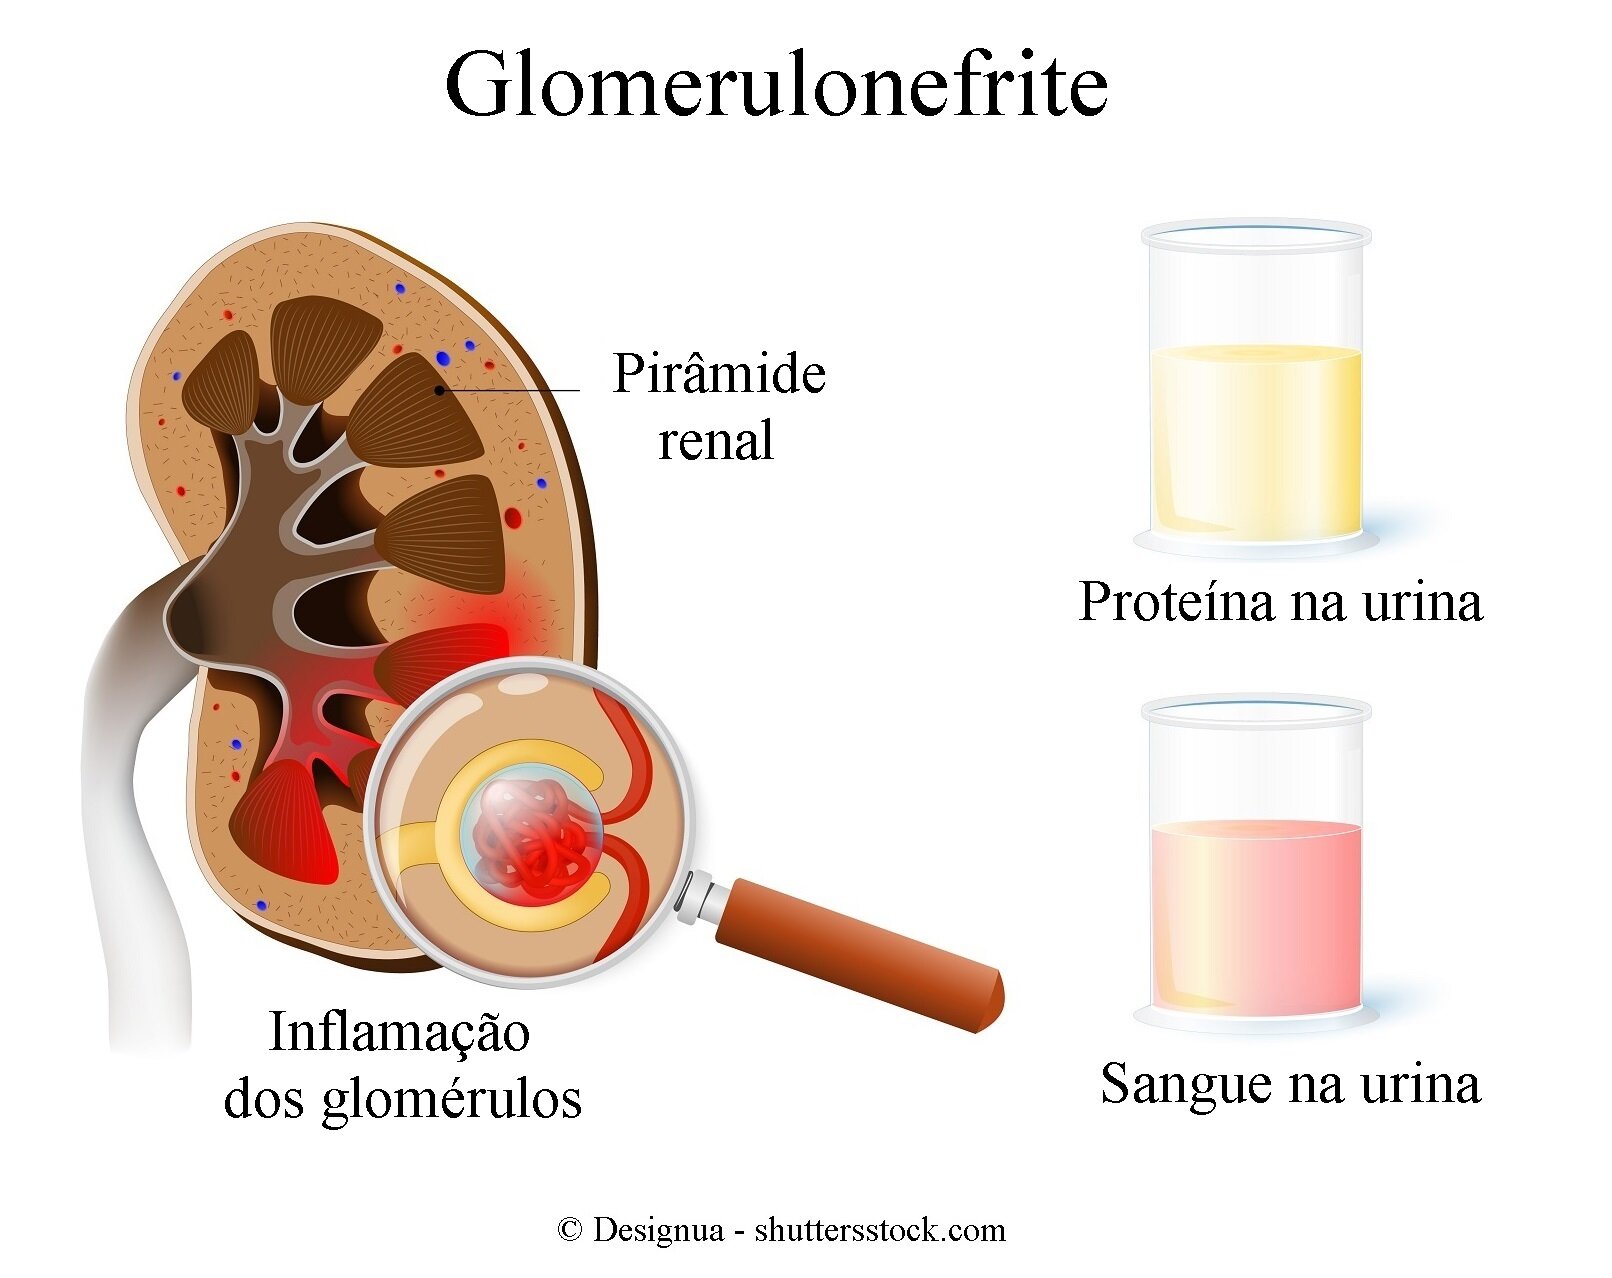  Glomerulonefrite você sabe o que é? Fique atento!